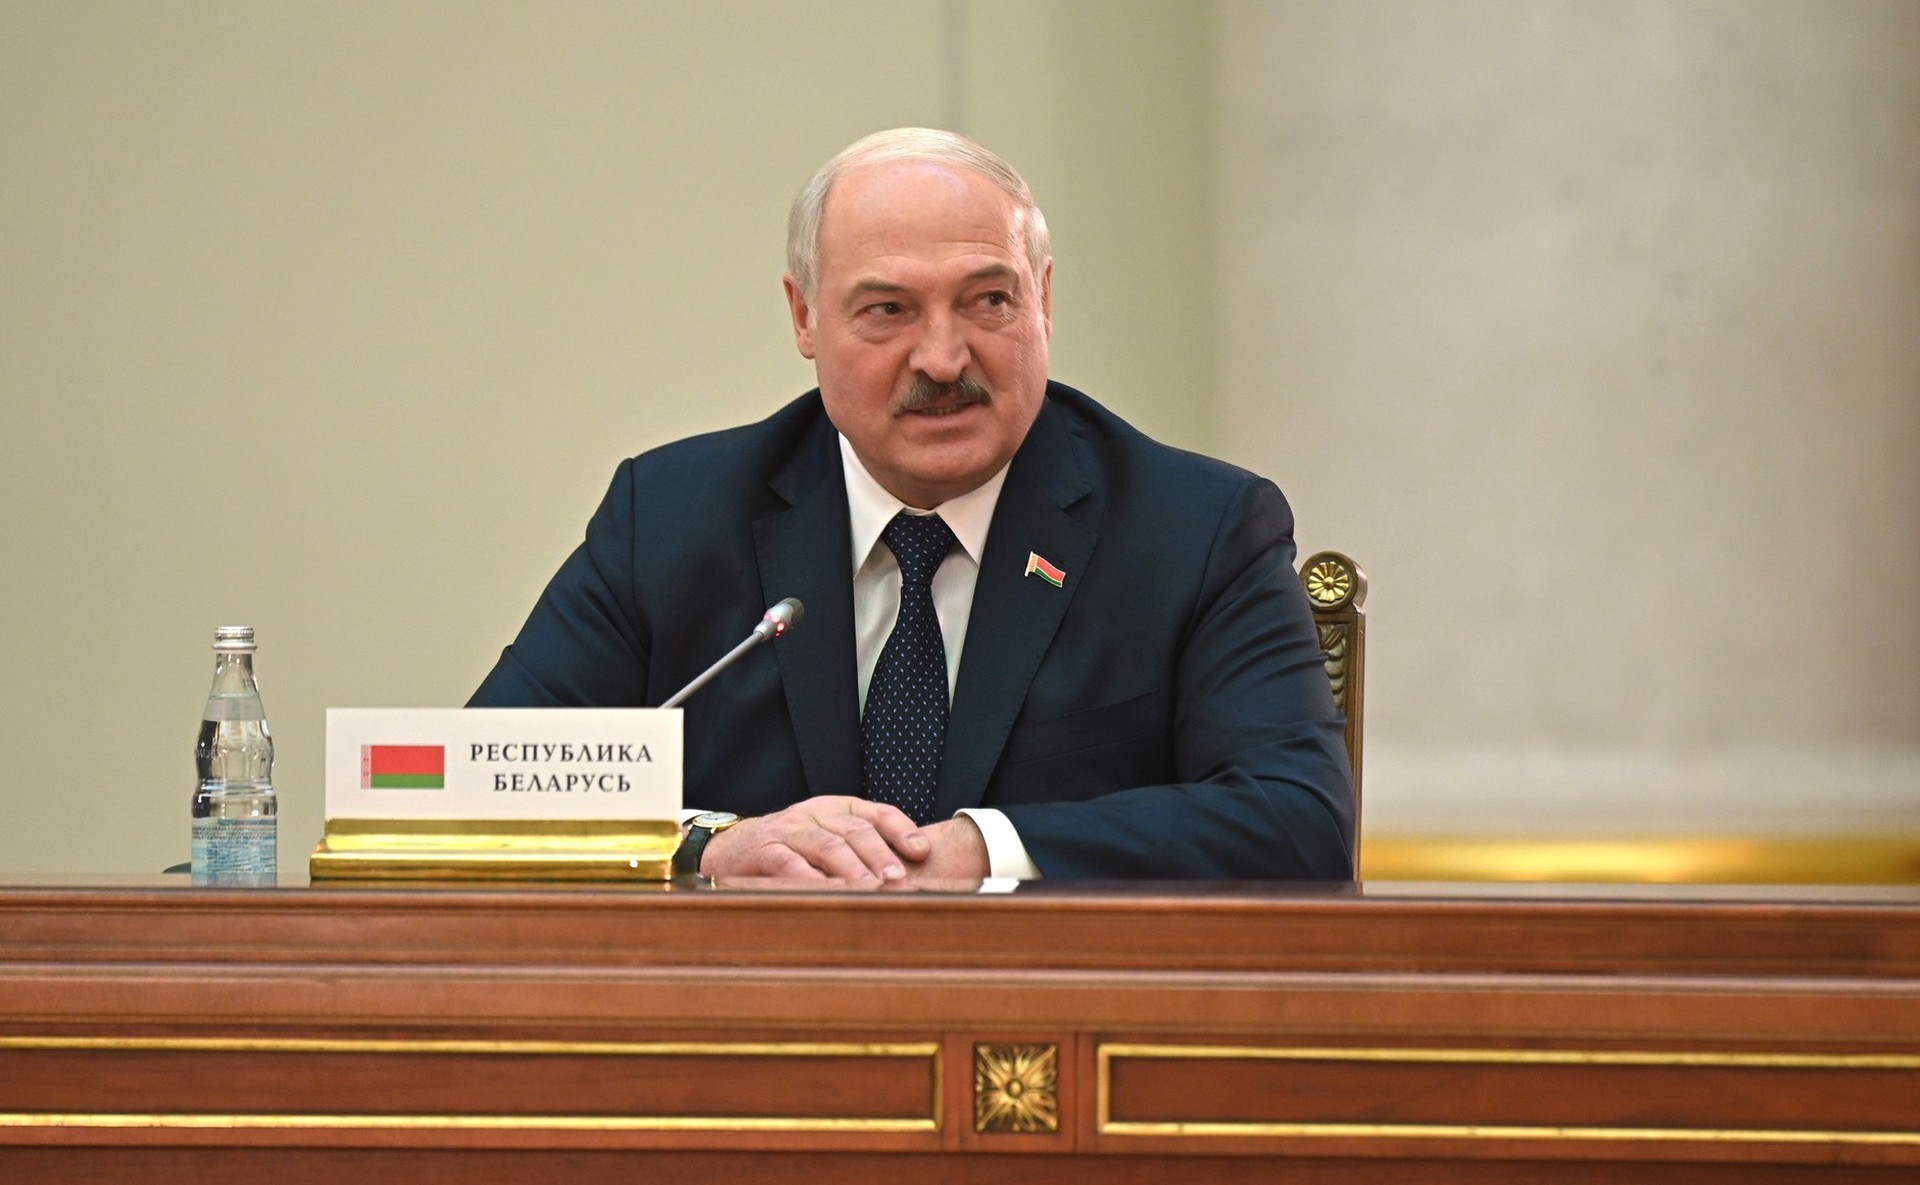 МИД Израиля обвинил президента Белоруссии Лукашенко в антисемитизме 